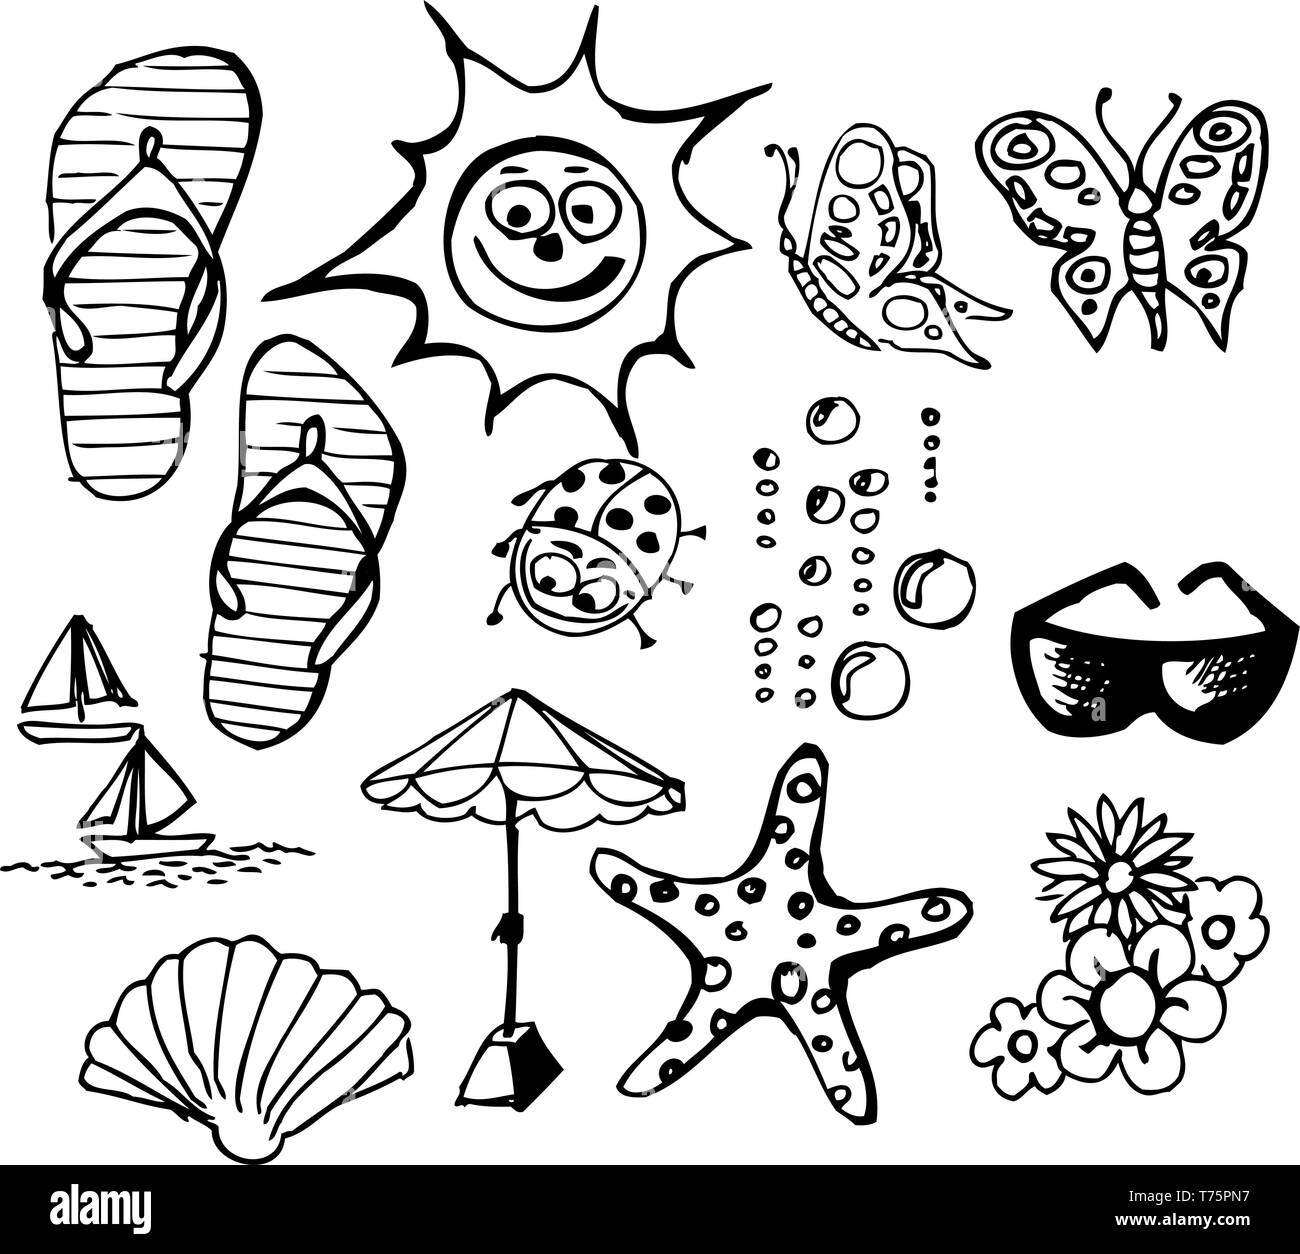 Summer doodle elements - sun, ocean, flower Stock Vector Image